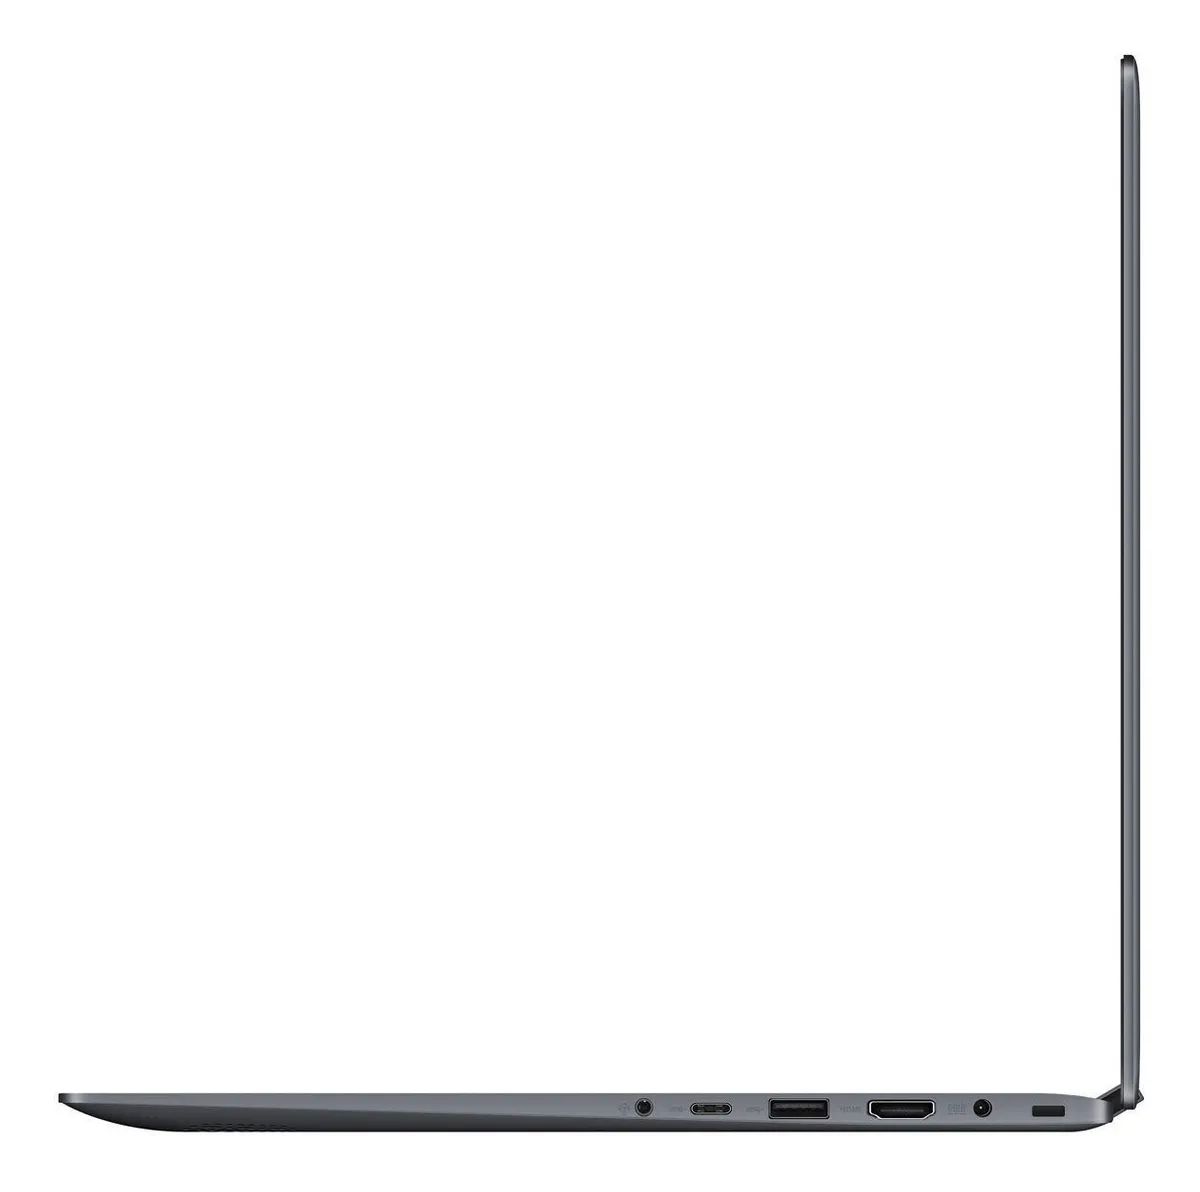 Laptop ASUS Vivo Book Flip Intel Core I3 8145u SSD 128 GB 4 Gb Ram Pantalla 14.1 Touch Screen FHD 1920*1080 Equipo Nuevo en Caja Recertificada por Asus 